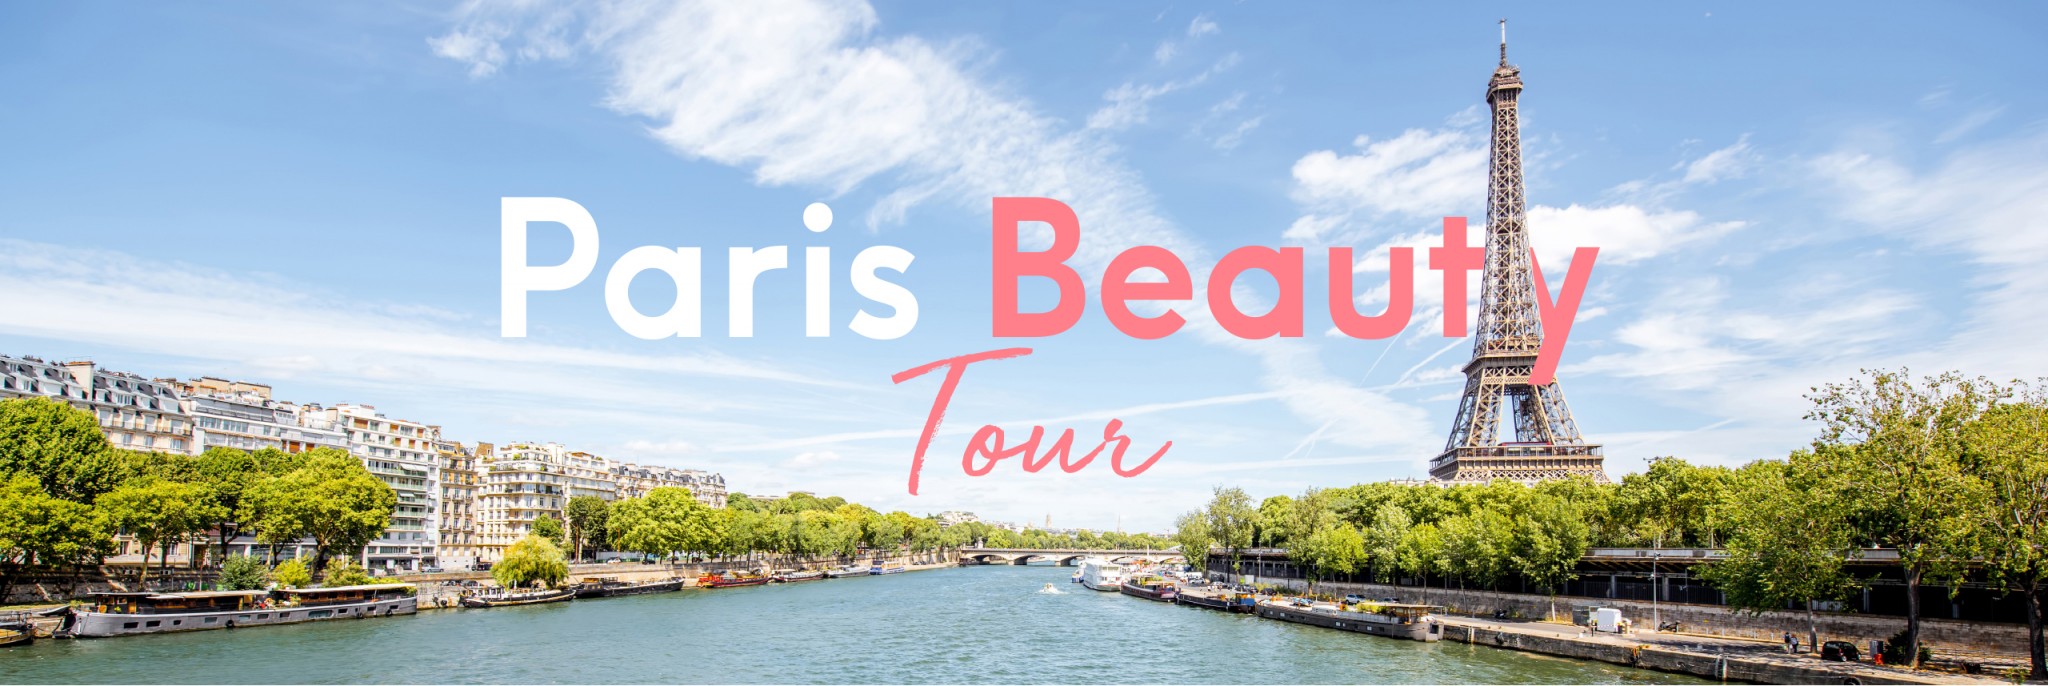 Paris_beauty_tour_header_002